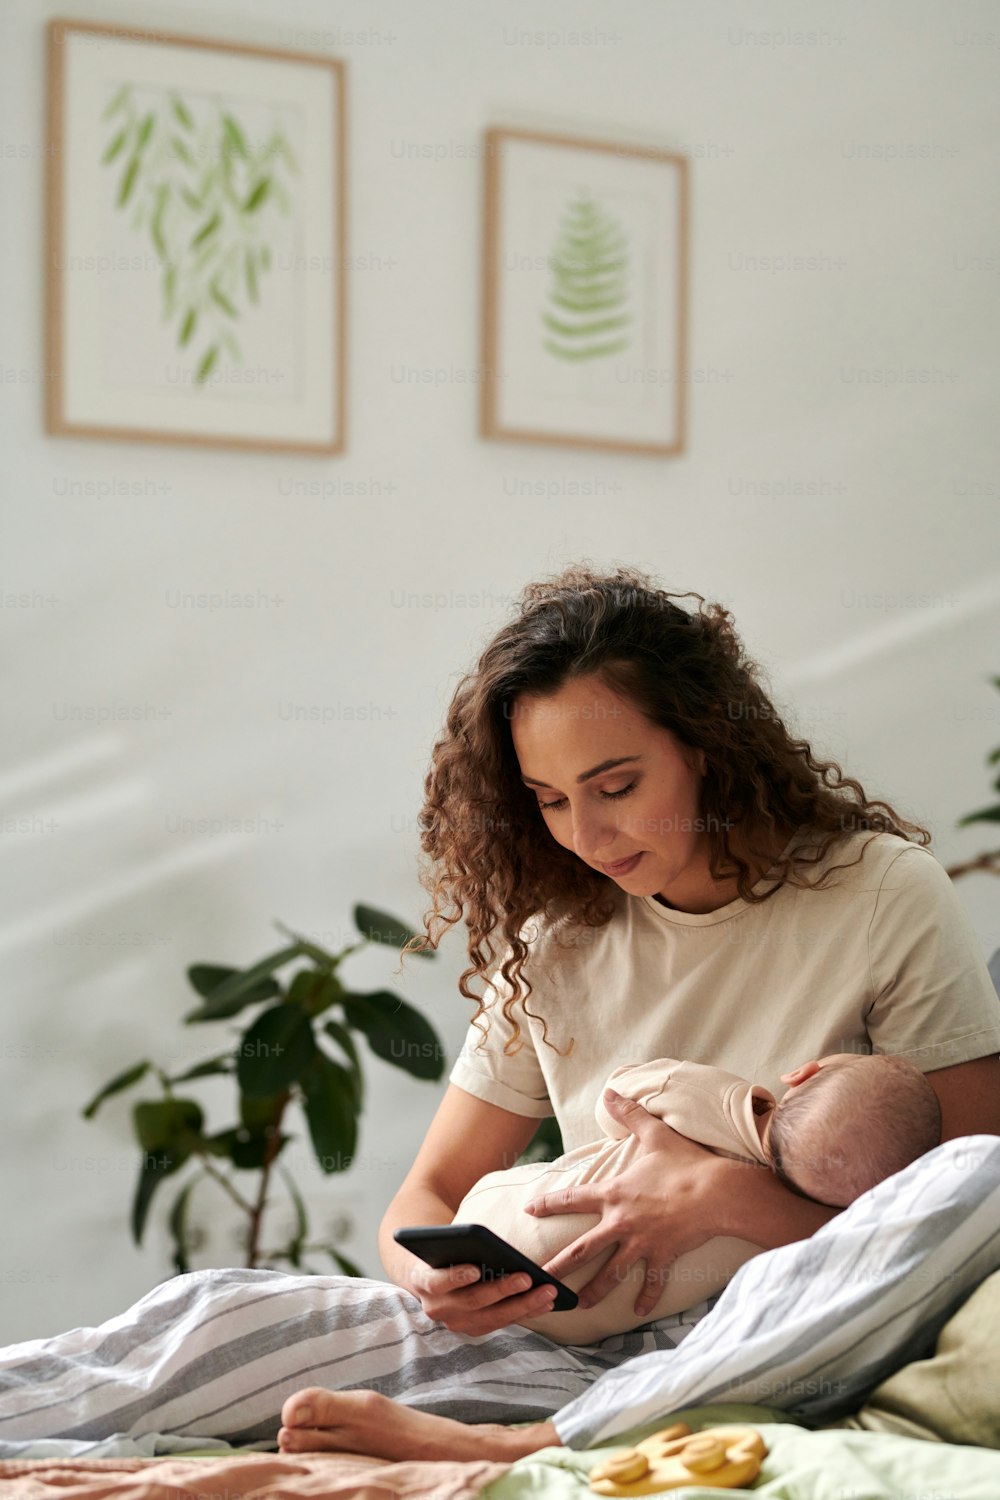 Junge Mutter mit Baby auf Händen SMS im Handy, während sie auf einem bequemen Doppelbett an der Wand mit Bildern in Rahmen sitzt